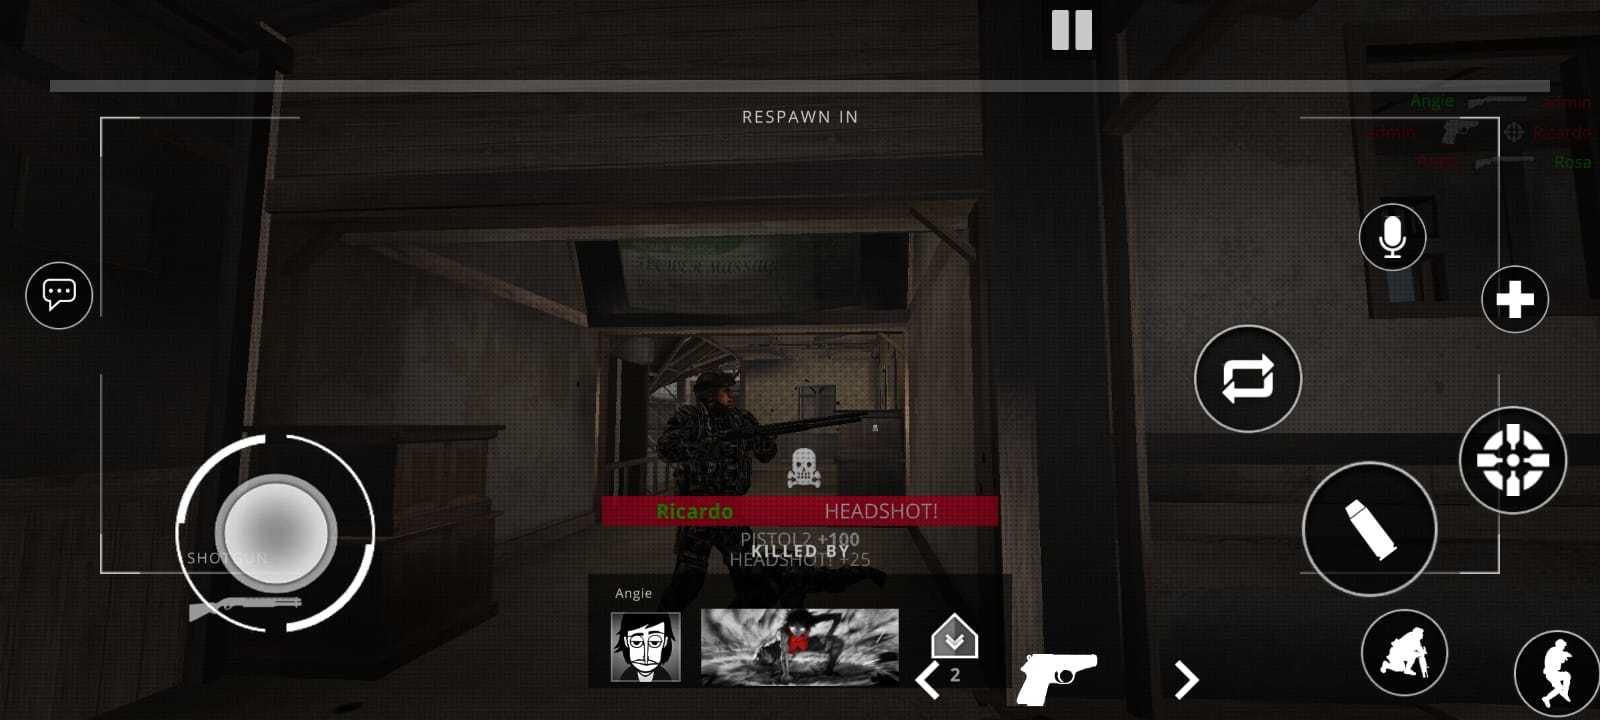 Screenshot of Elite Battlefield